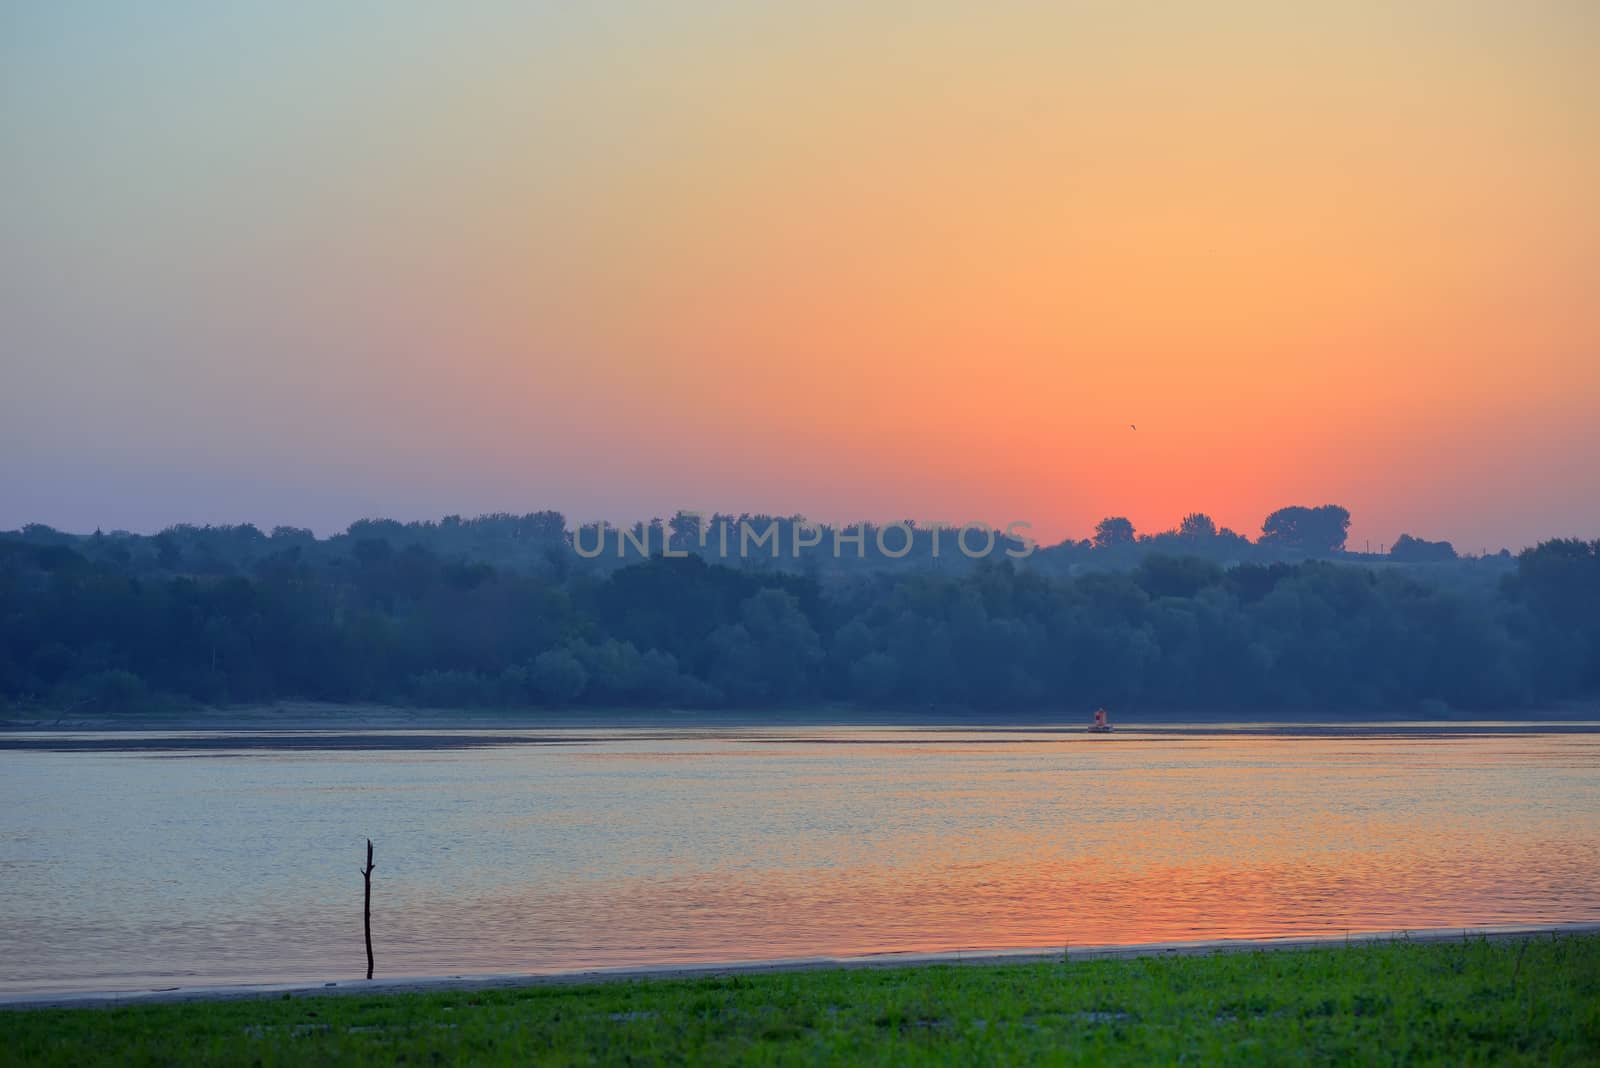 Sunrise over Danube river in Moldova 